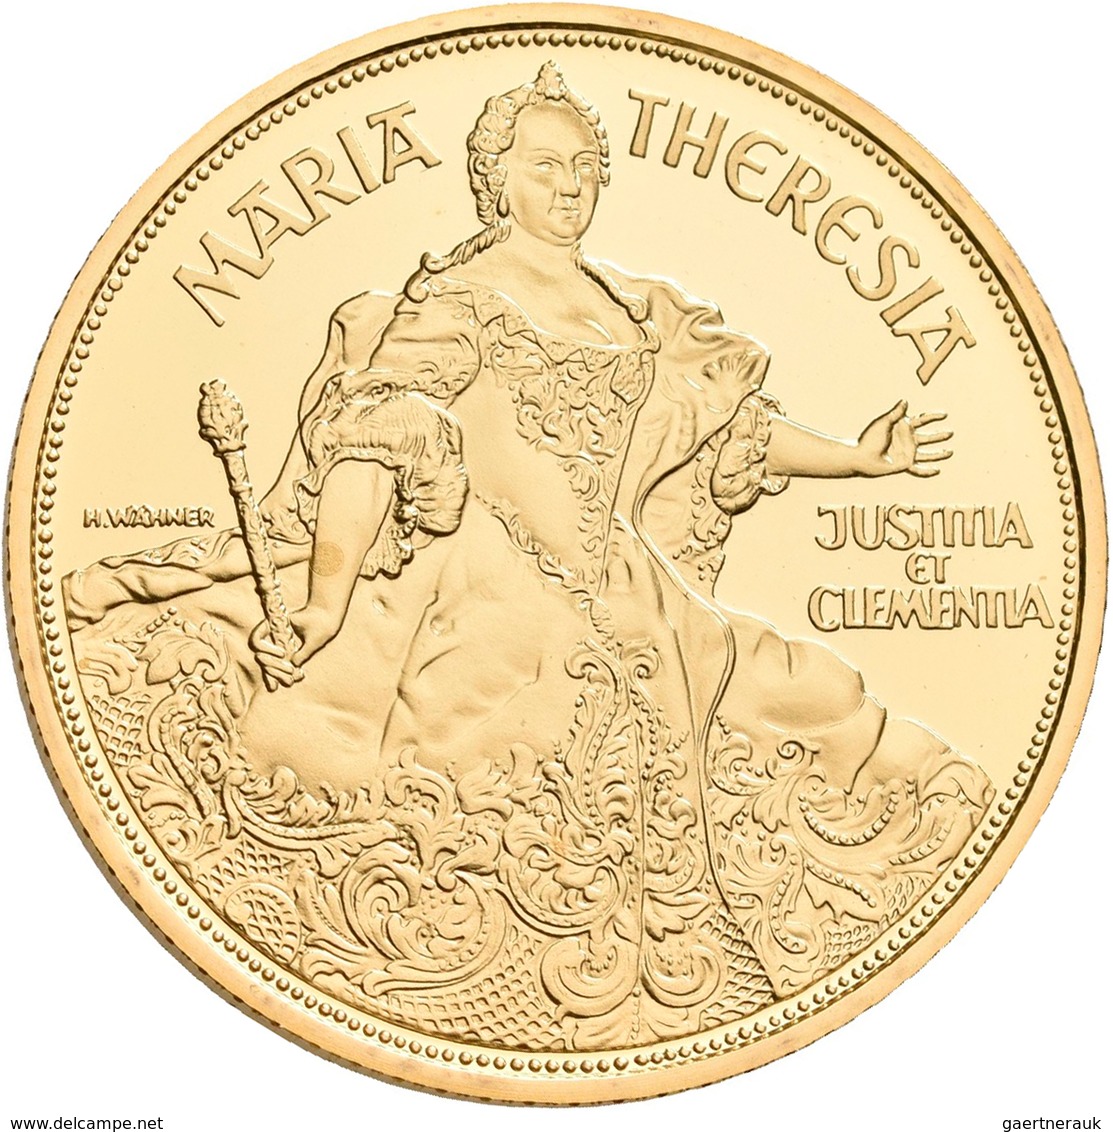 Österreich - Anlagegold: 2. Republik Ab 1945: Lot 2 Goldmünzen Serie 1000 Jahre Österreich - Millenn - Austria